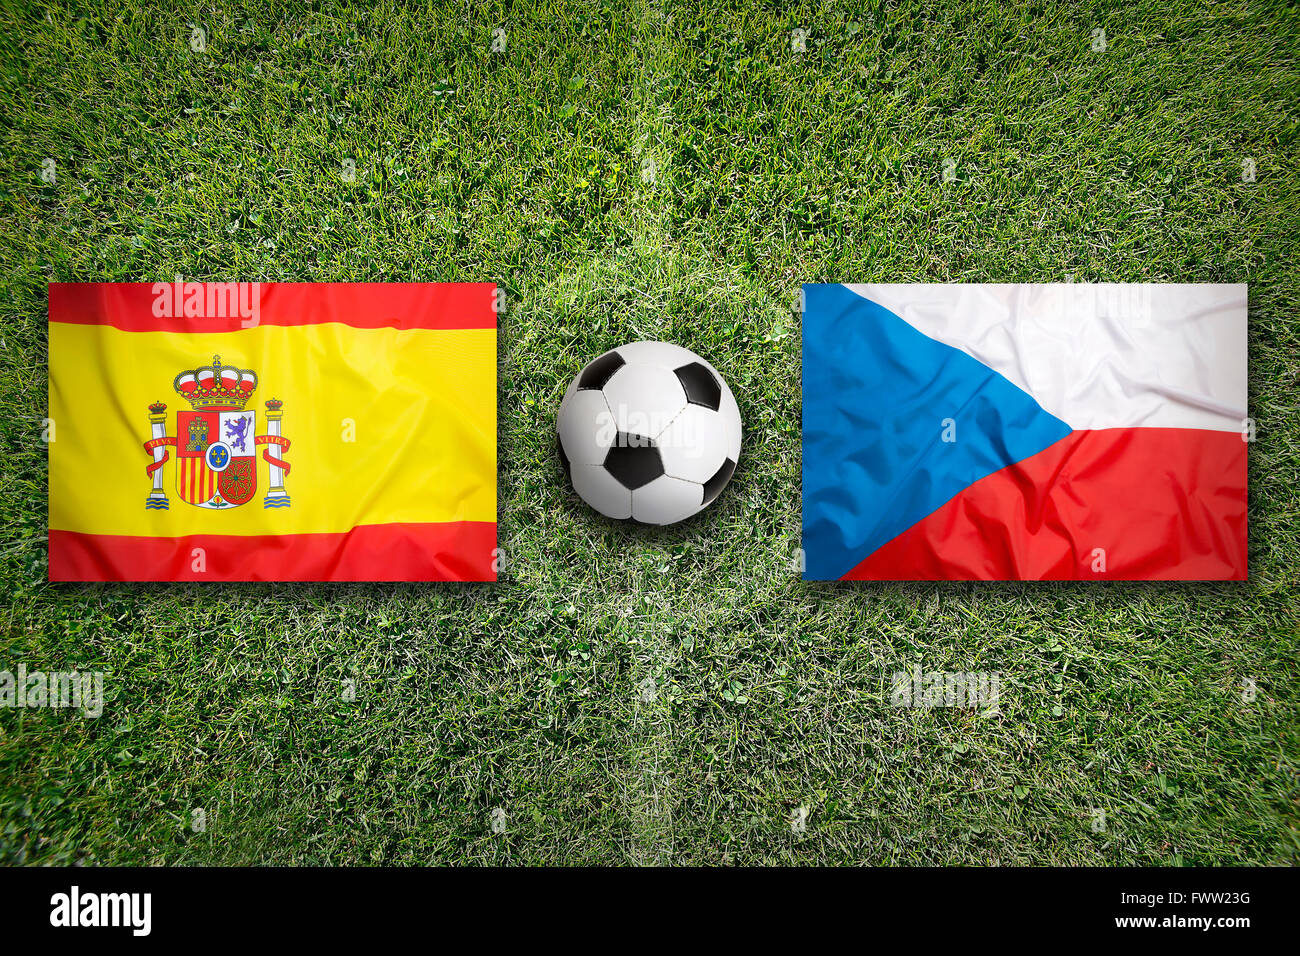 Spain vs. Czech Republic flags on green soccer field Stock Photo